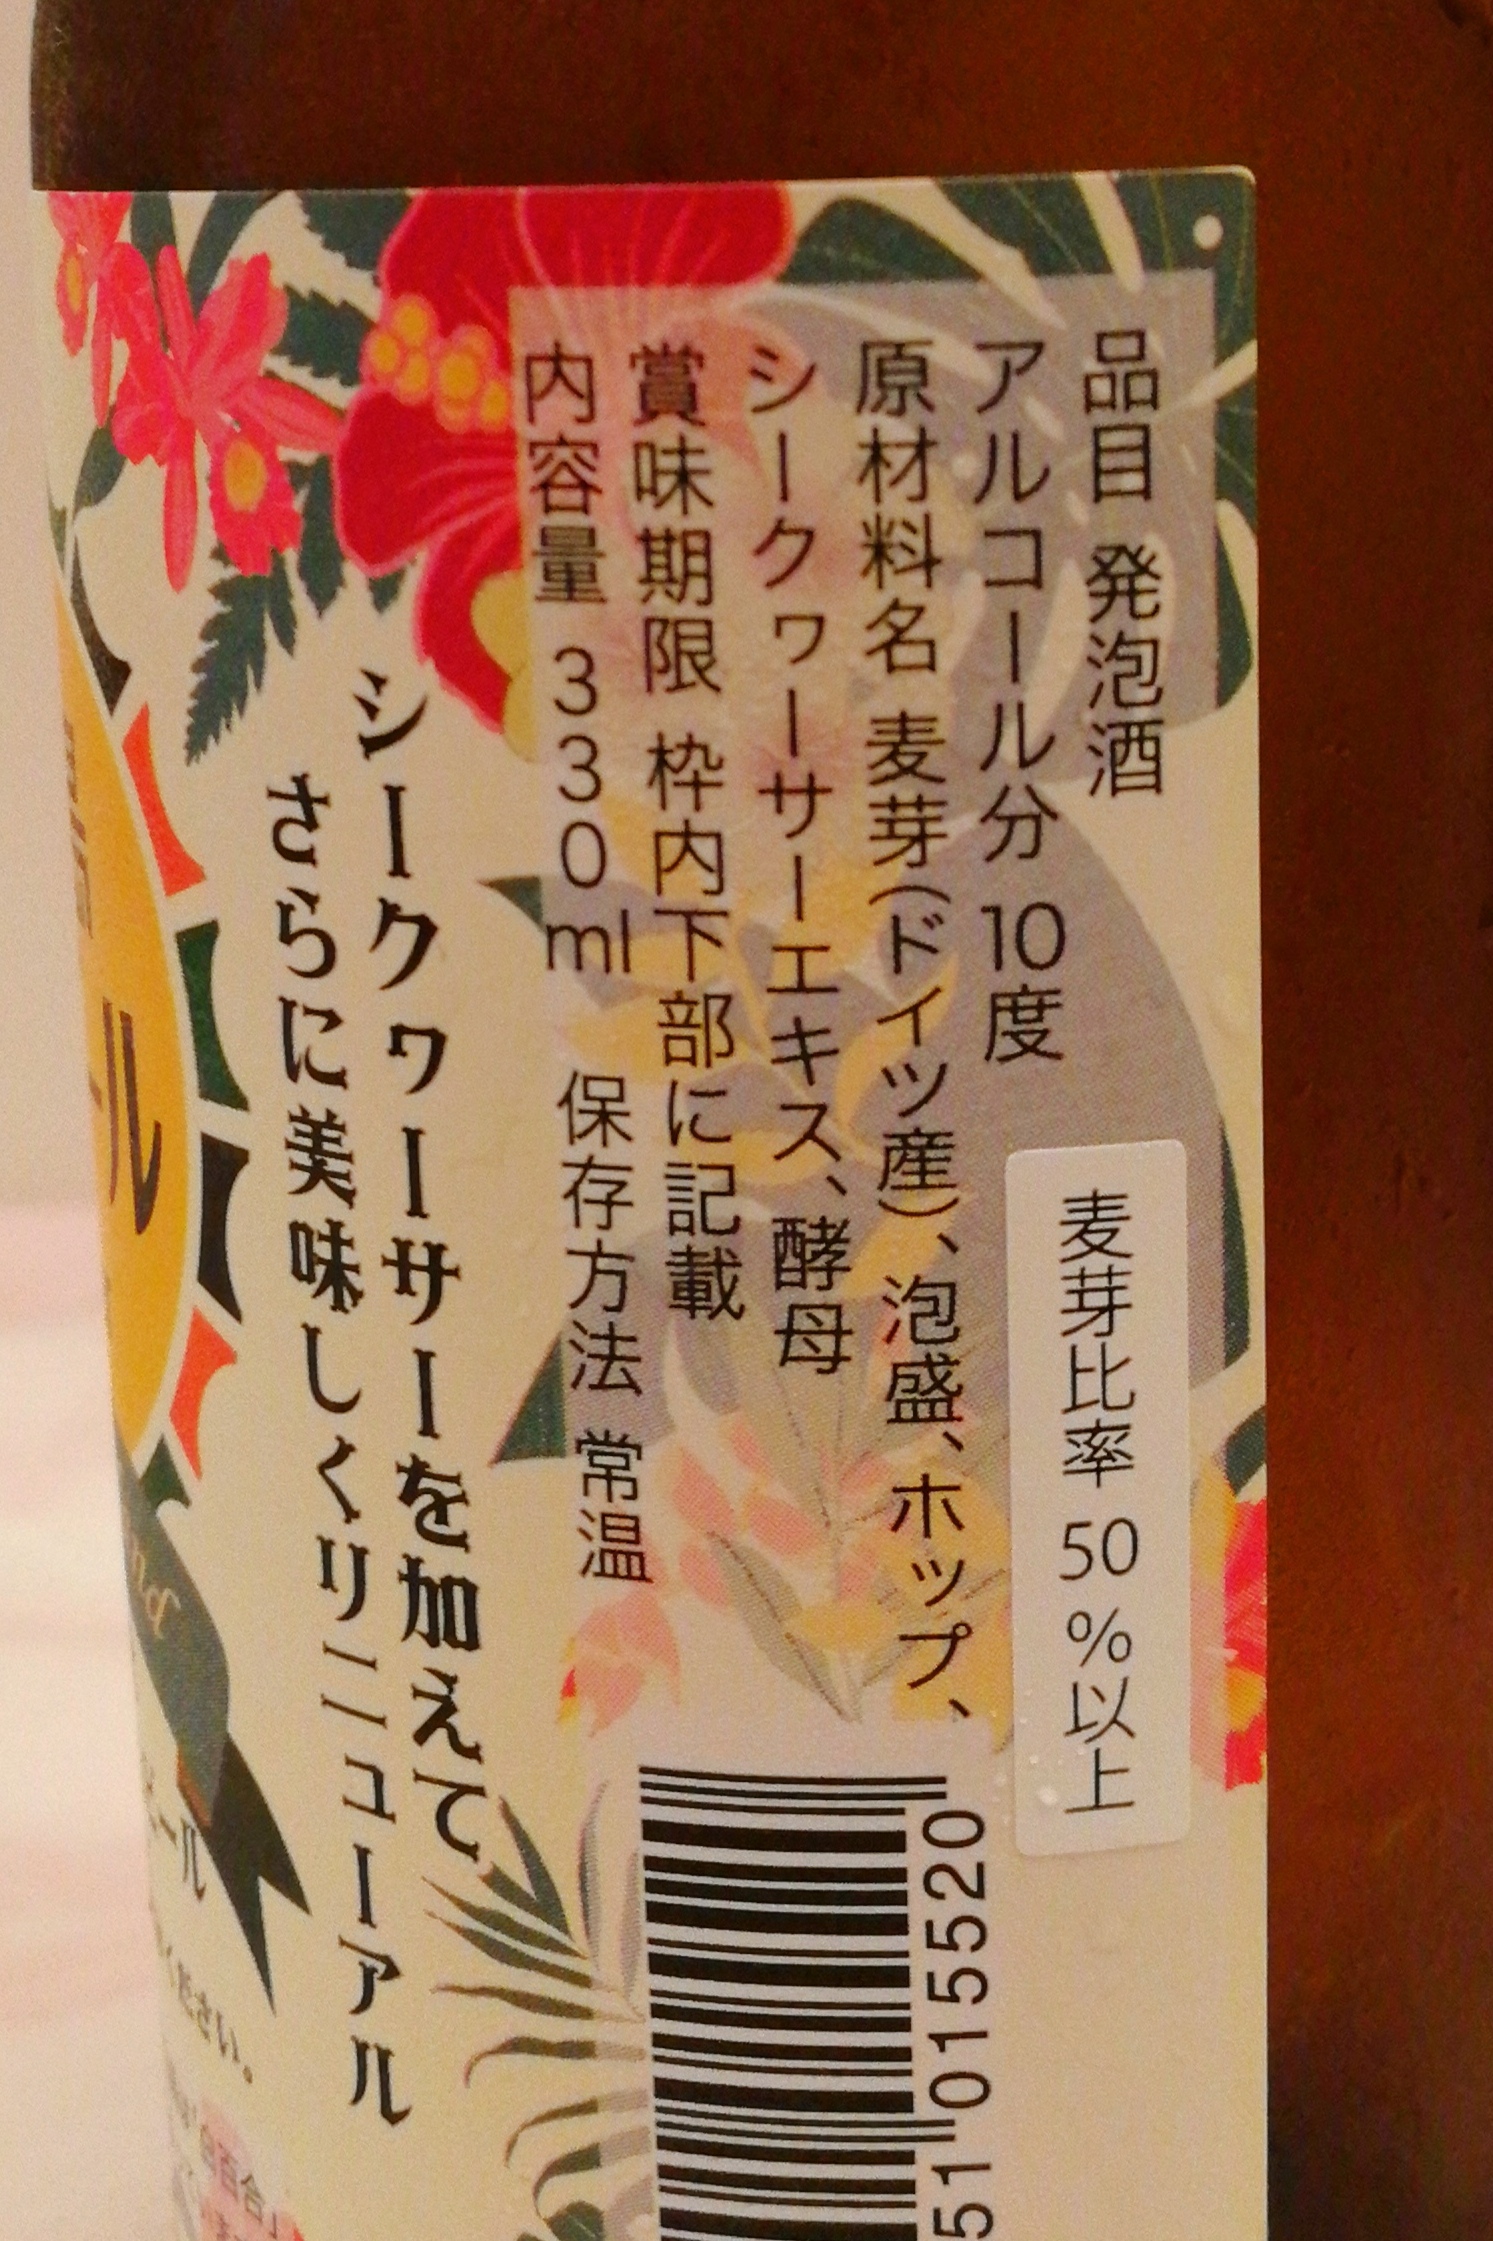 沖縄,石垣島ビール株式会社,石垣島ハイビール,Hi-beer